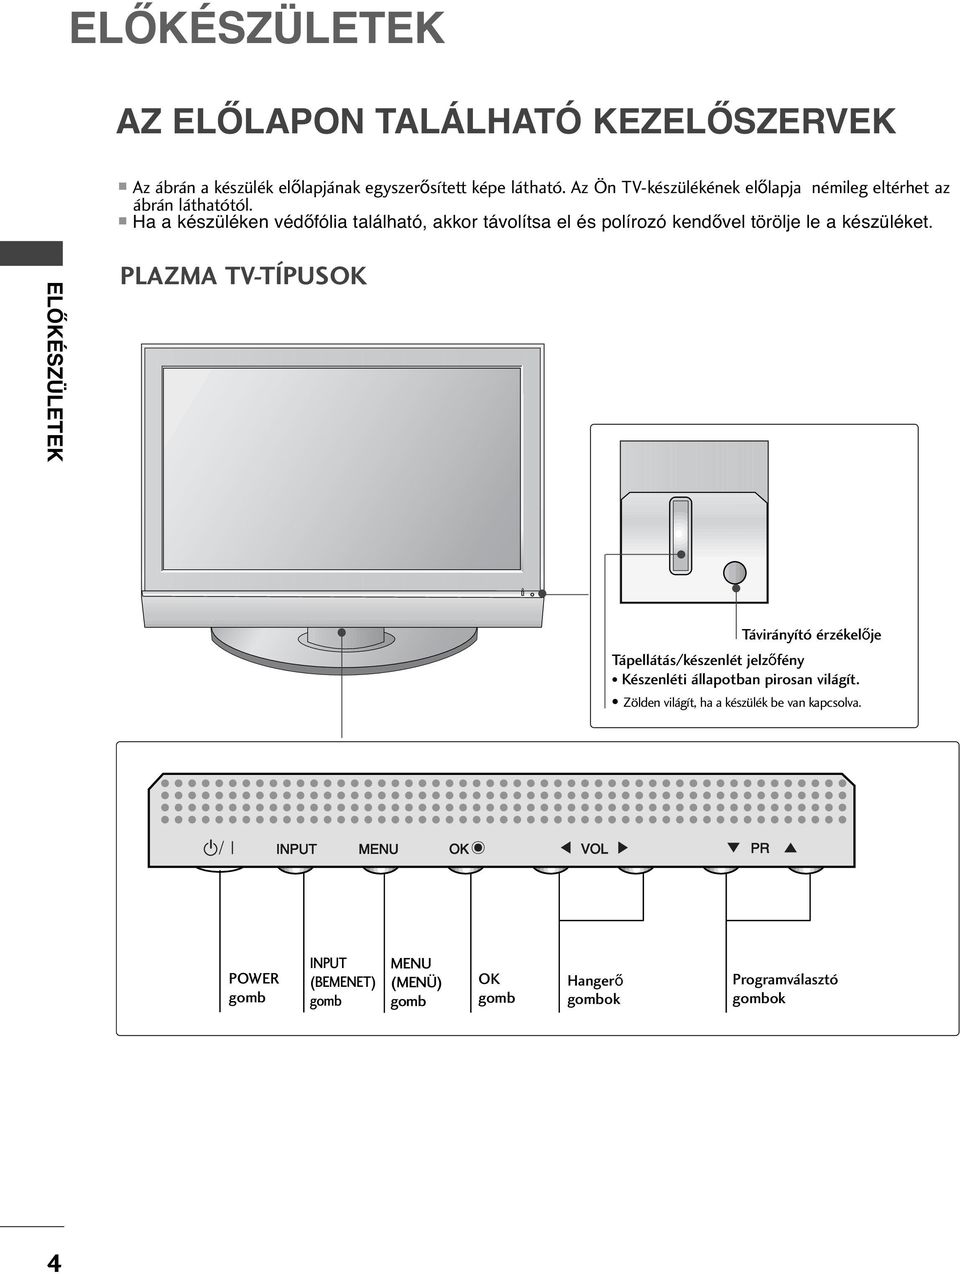 LCD TV PLAZMA TV HASZNÁLATI ÚTMUTATÓ - PDF Ingyenes letöltés